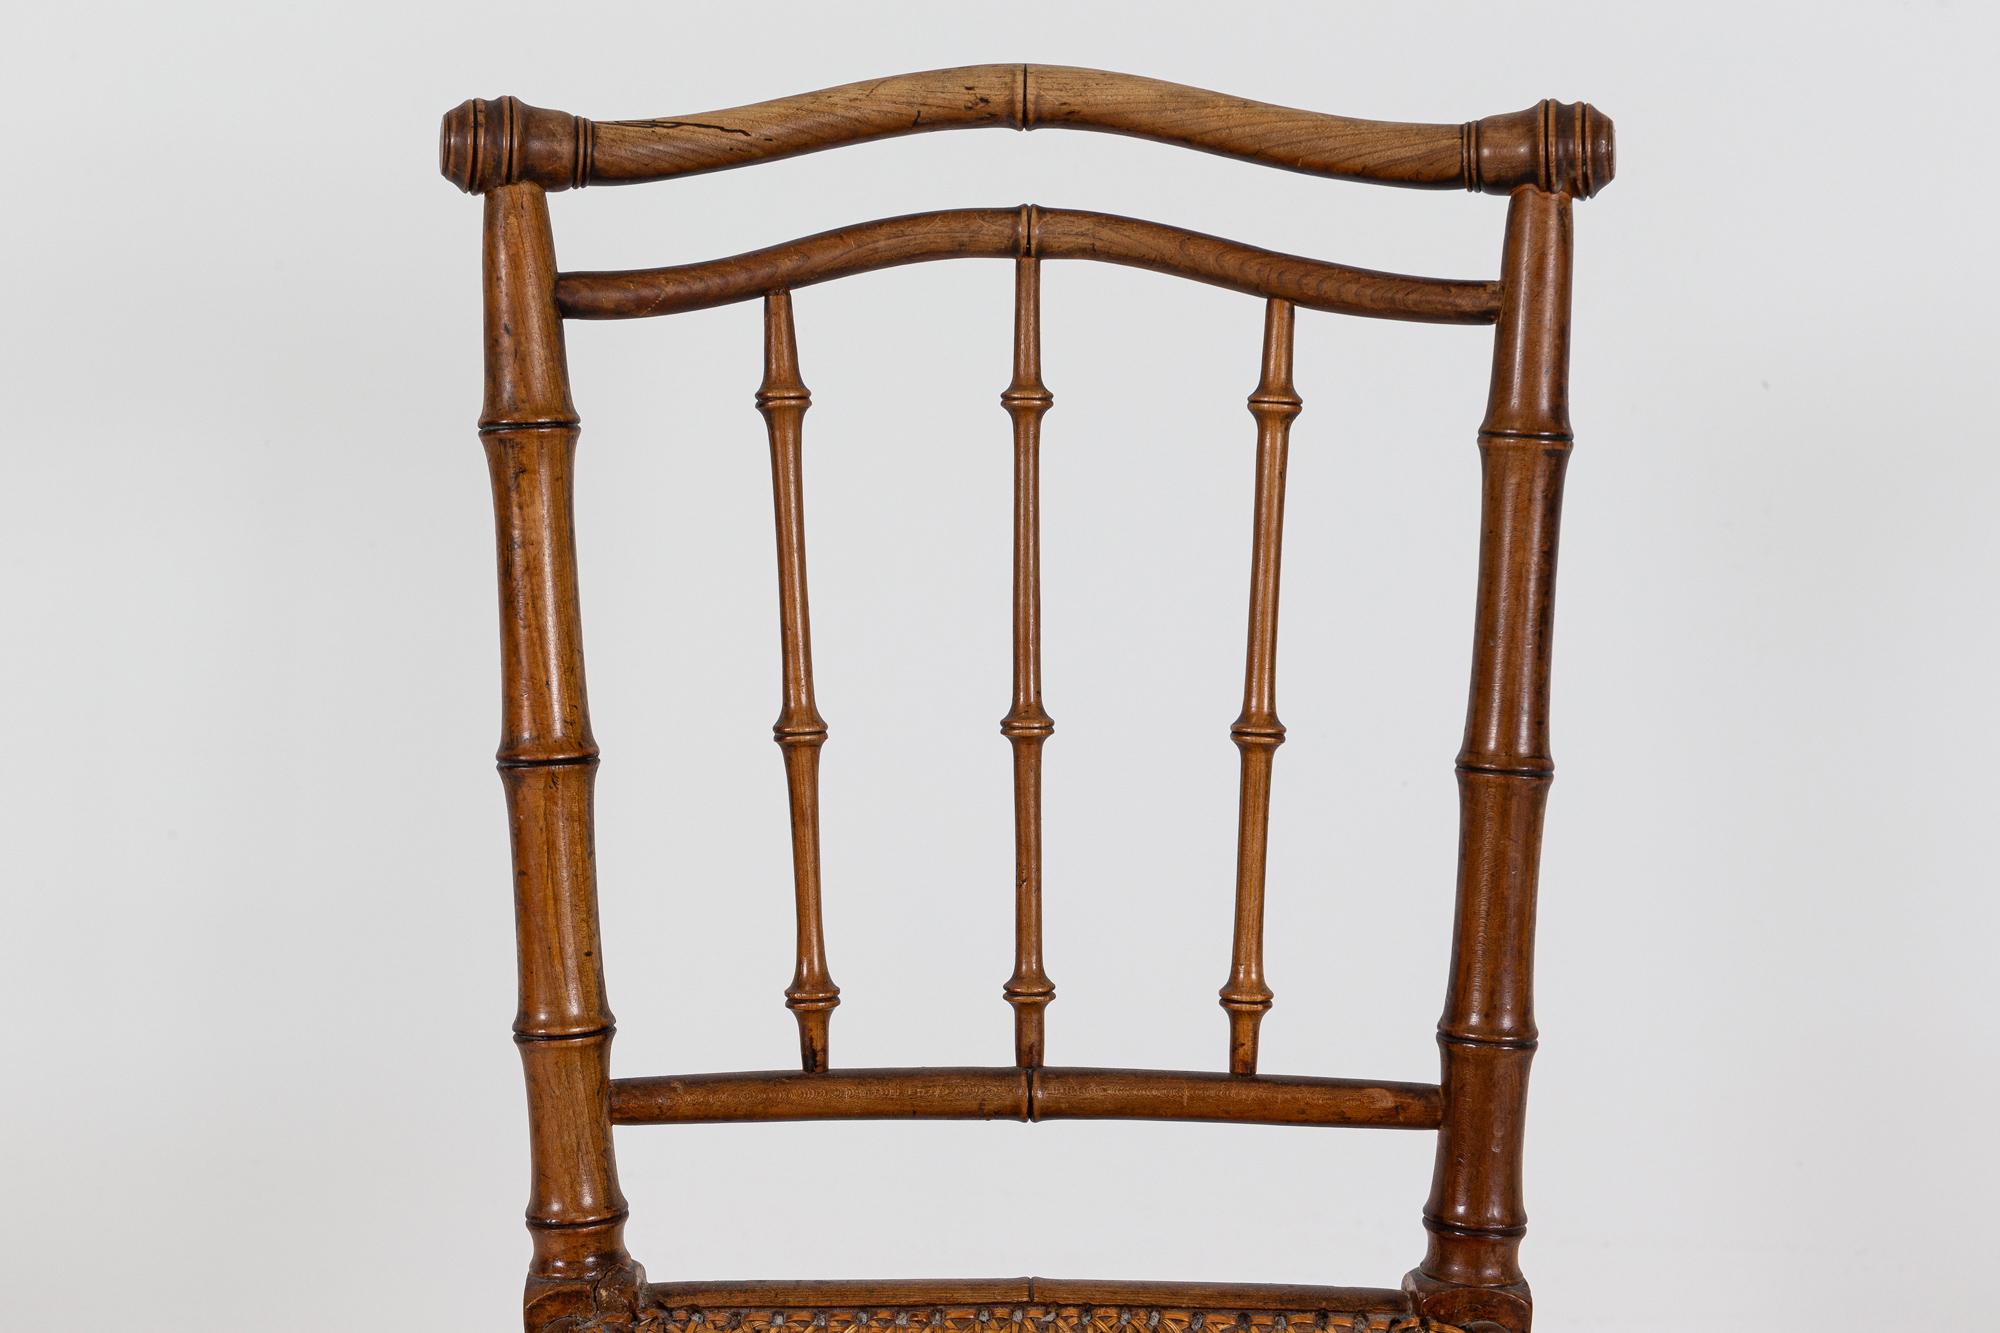 Circa 1840.

19. Jahrhundert, 4 Stühle aus französischem Faux-Bambus-Rattan, Buche

Ausgezeichnete Farbe und Patinierung

Aus Südfrankreich stammend

Maße: B 42 x T 42 x H 85 cm
Sitzhöhe 45 cm.

 